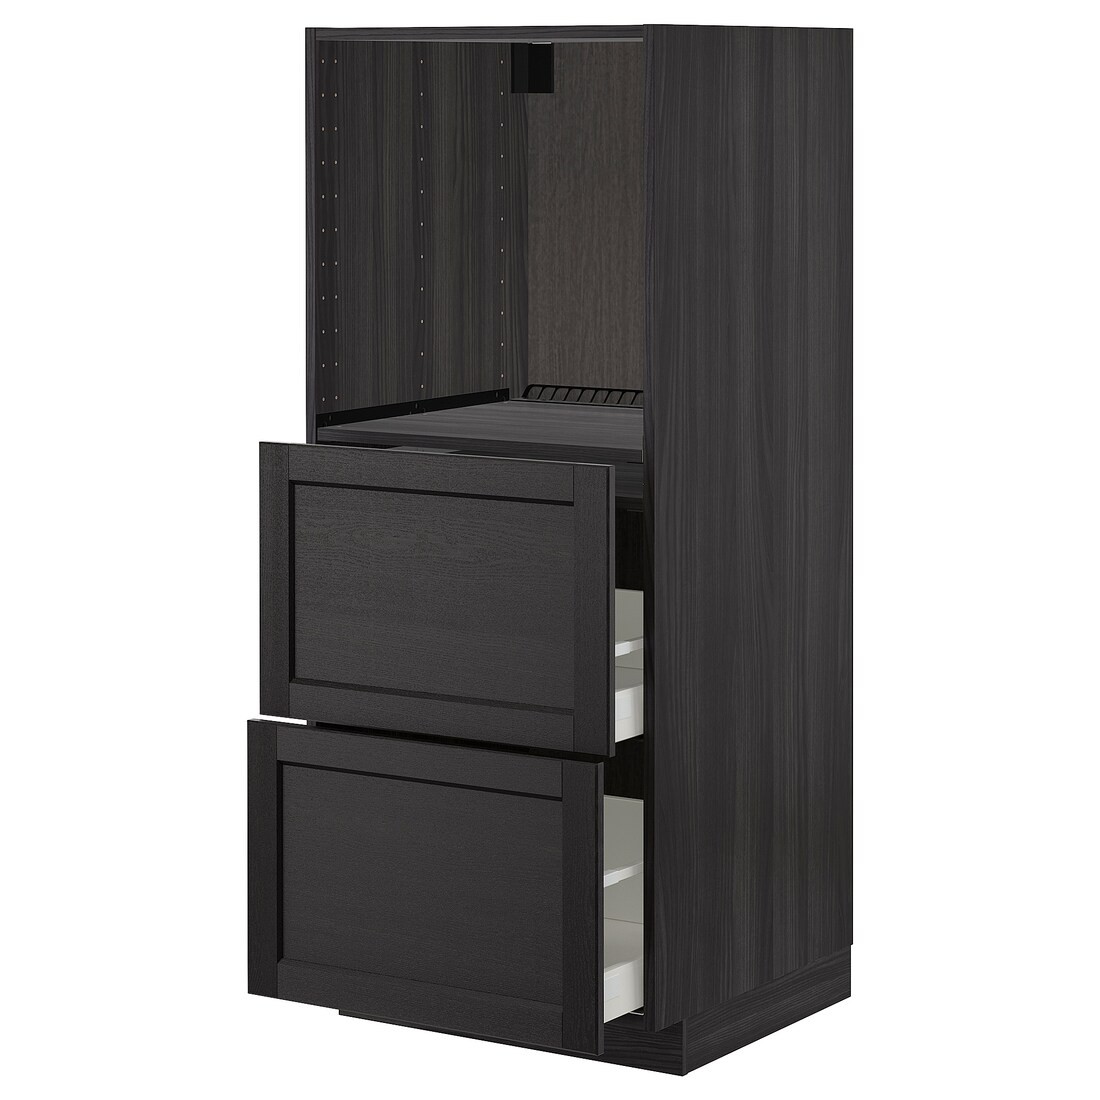 IKEA METOD МЕТОД / MAXIMERA МАКСИМЕРА Высокий шкаф с 2 ящиками для духовки, черный / Lerhyttan черная морилка, 60x60x140 см 79270602 792.706.02